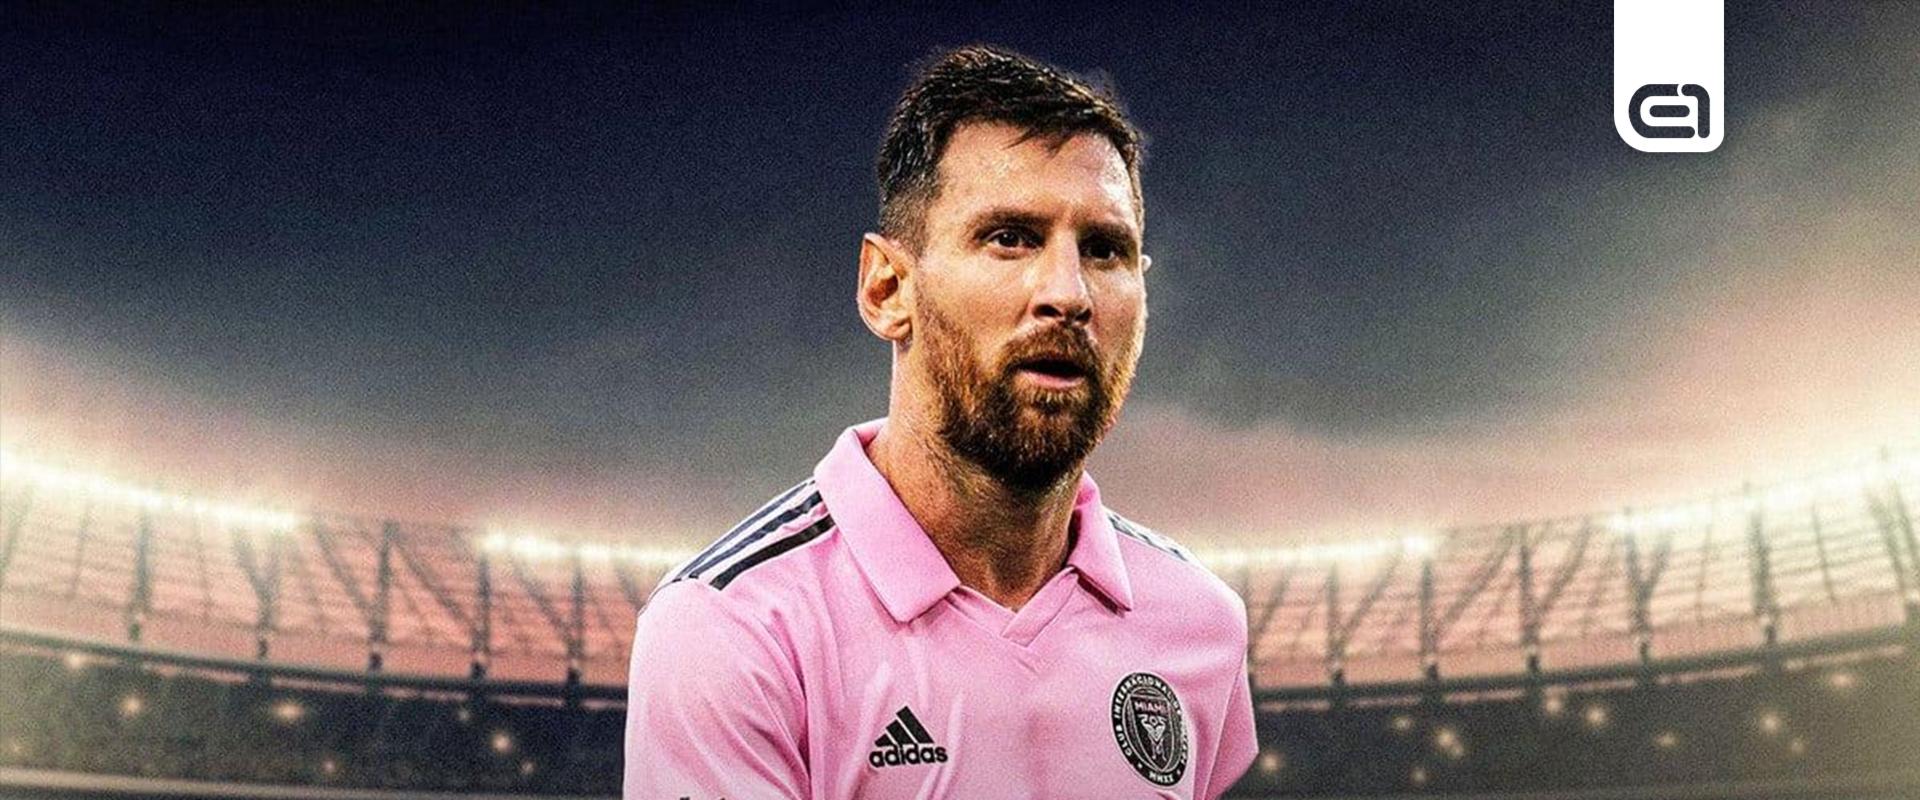 Ennyi, vége? Lionel Messi elveszítette a trónt?